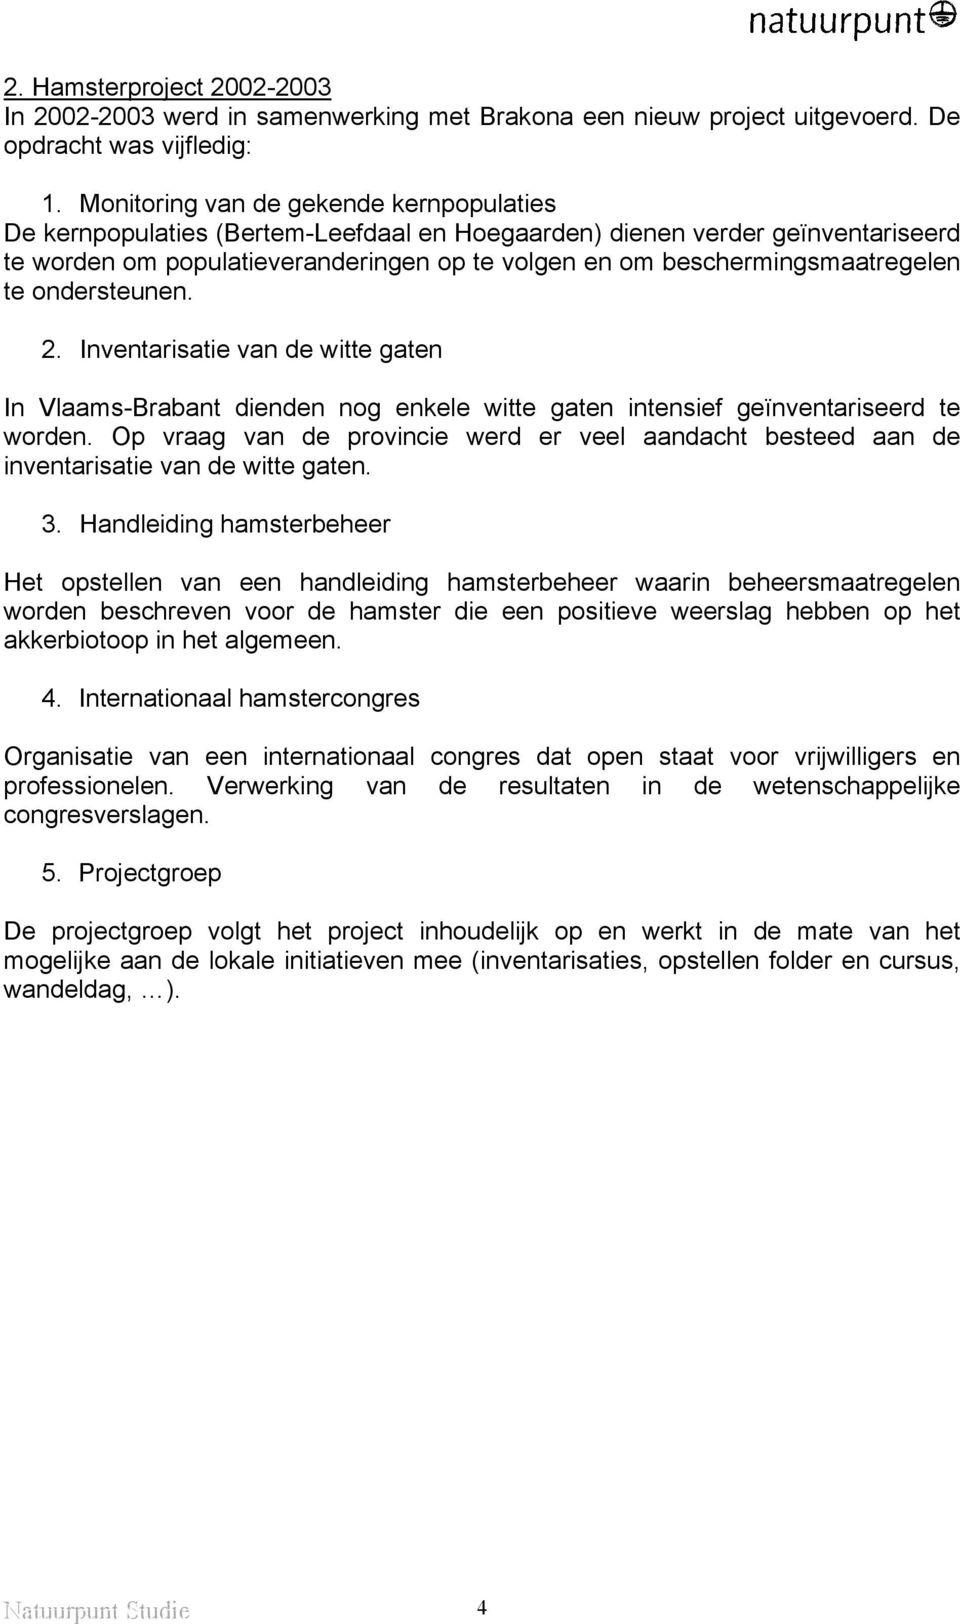 beschermingsmaatregelen te ondersteunen. 2. Inventarisatie van de witte gaten In Vlaams-Brabant dienden nog enkele witte gaten intensief geïnventariseerd te worden.